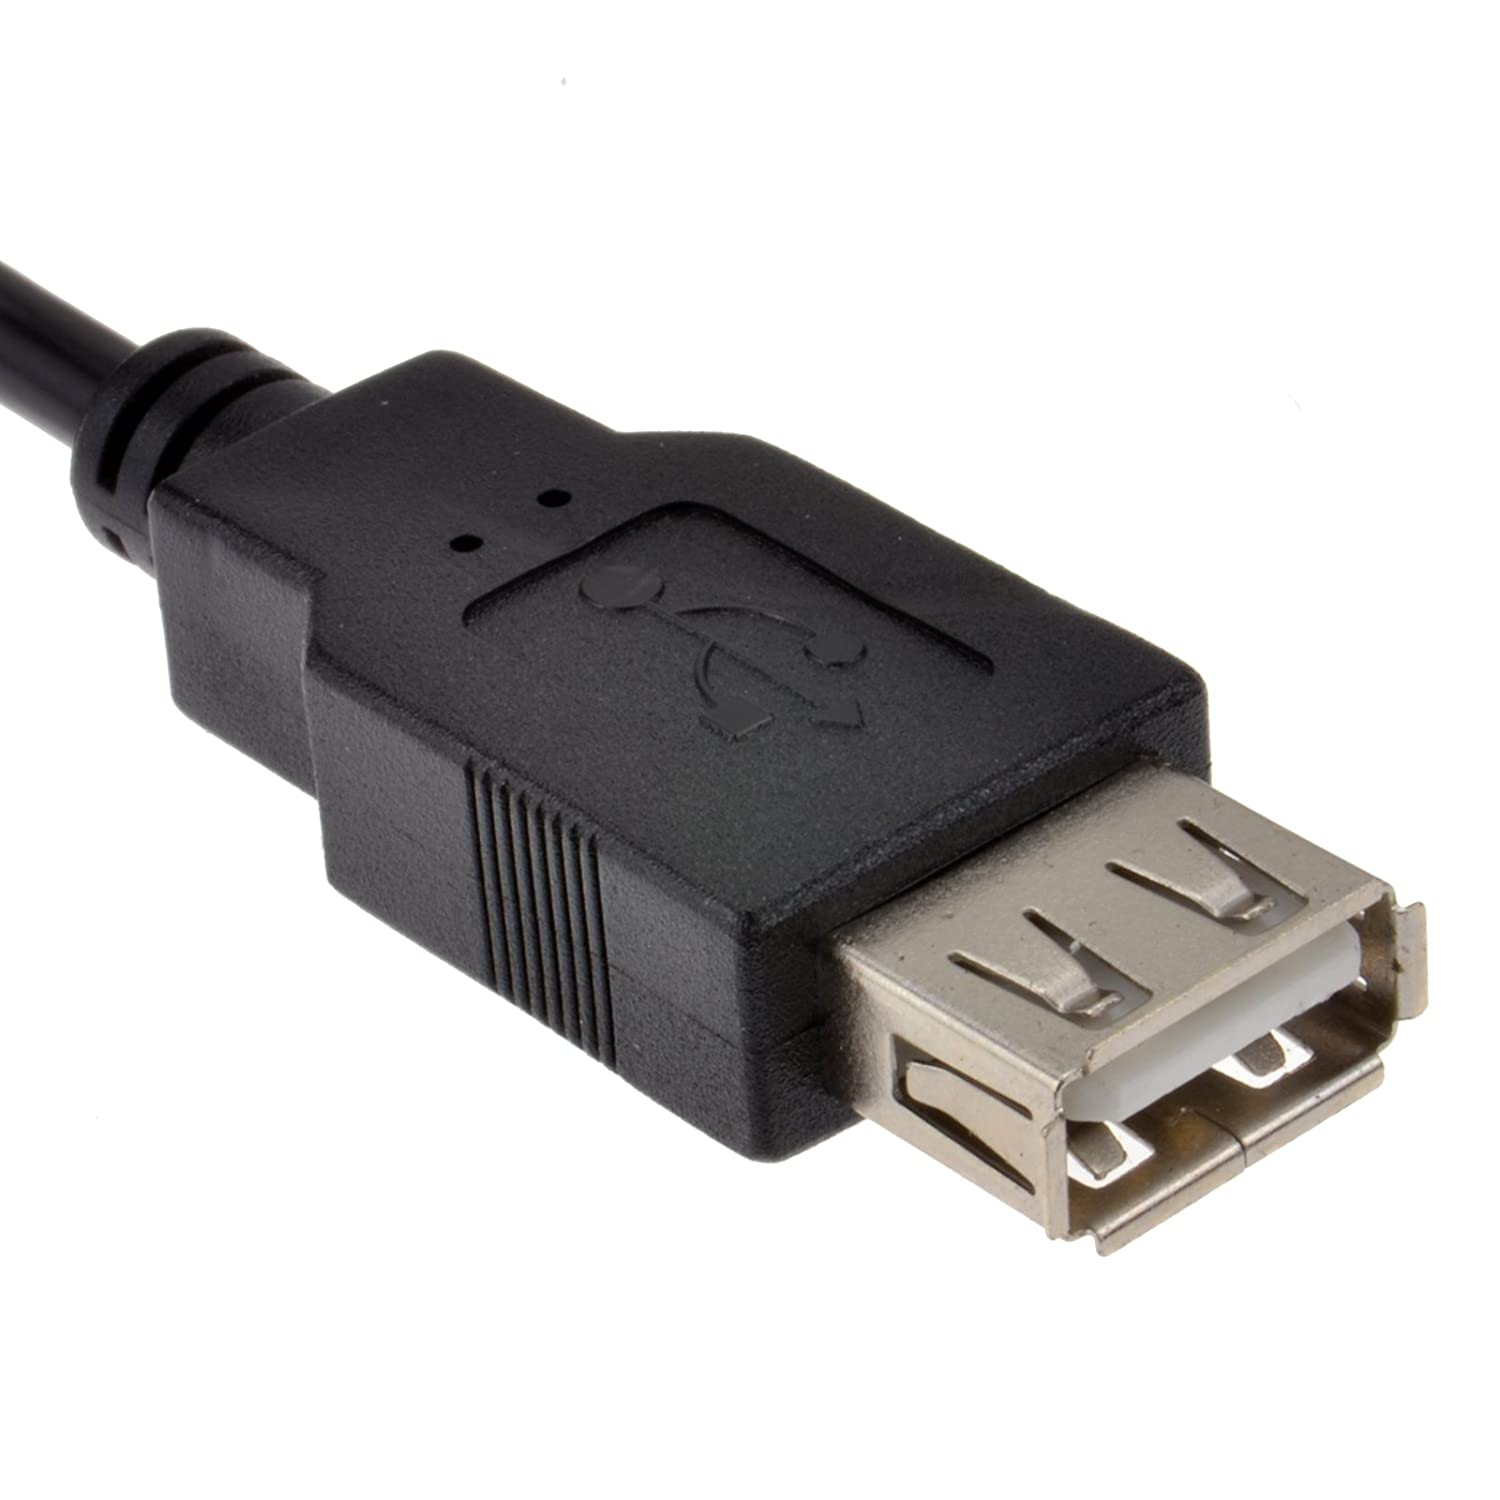 Cable alargador extensor USB 2.0 0.30 M Negro